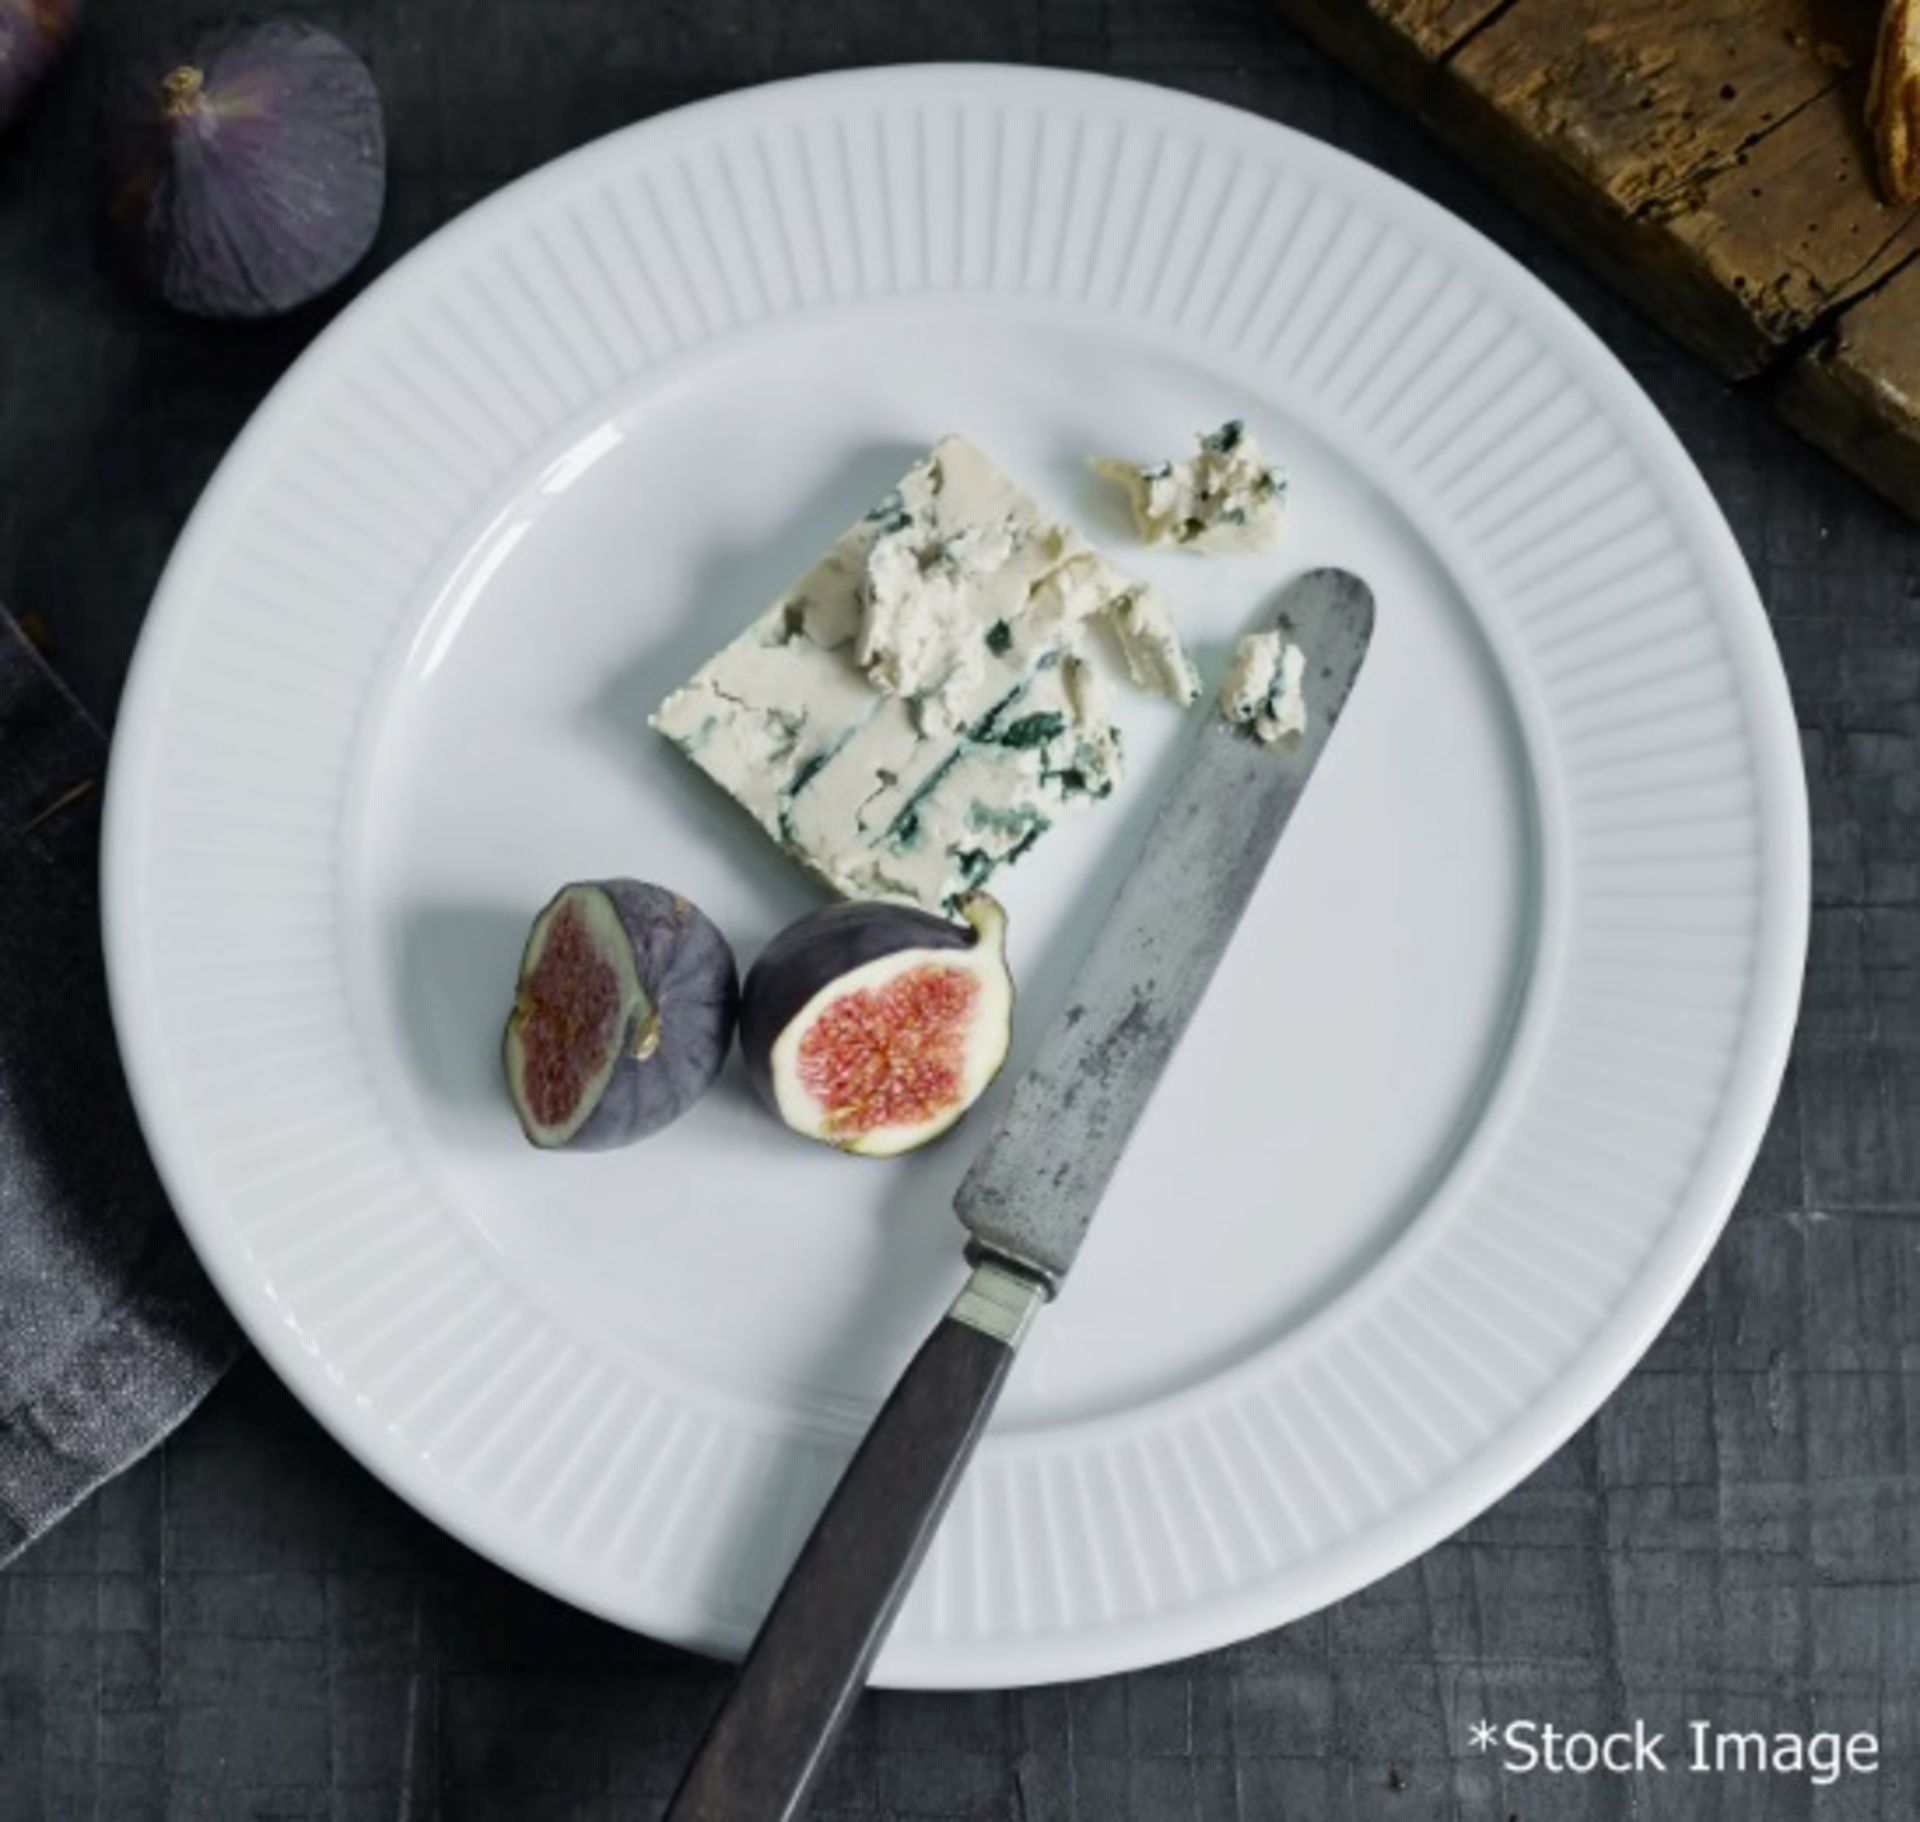 30 x PILLIVUYT 'Plisse' Porcelain Salad / Dessert Plates With A Pleated Design - Dimensions: 25.5cm